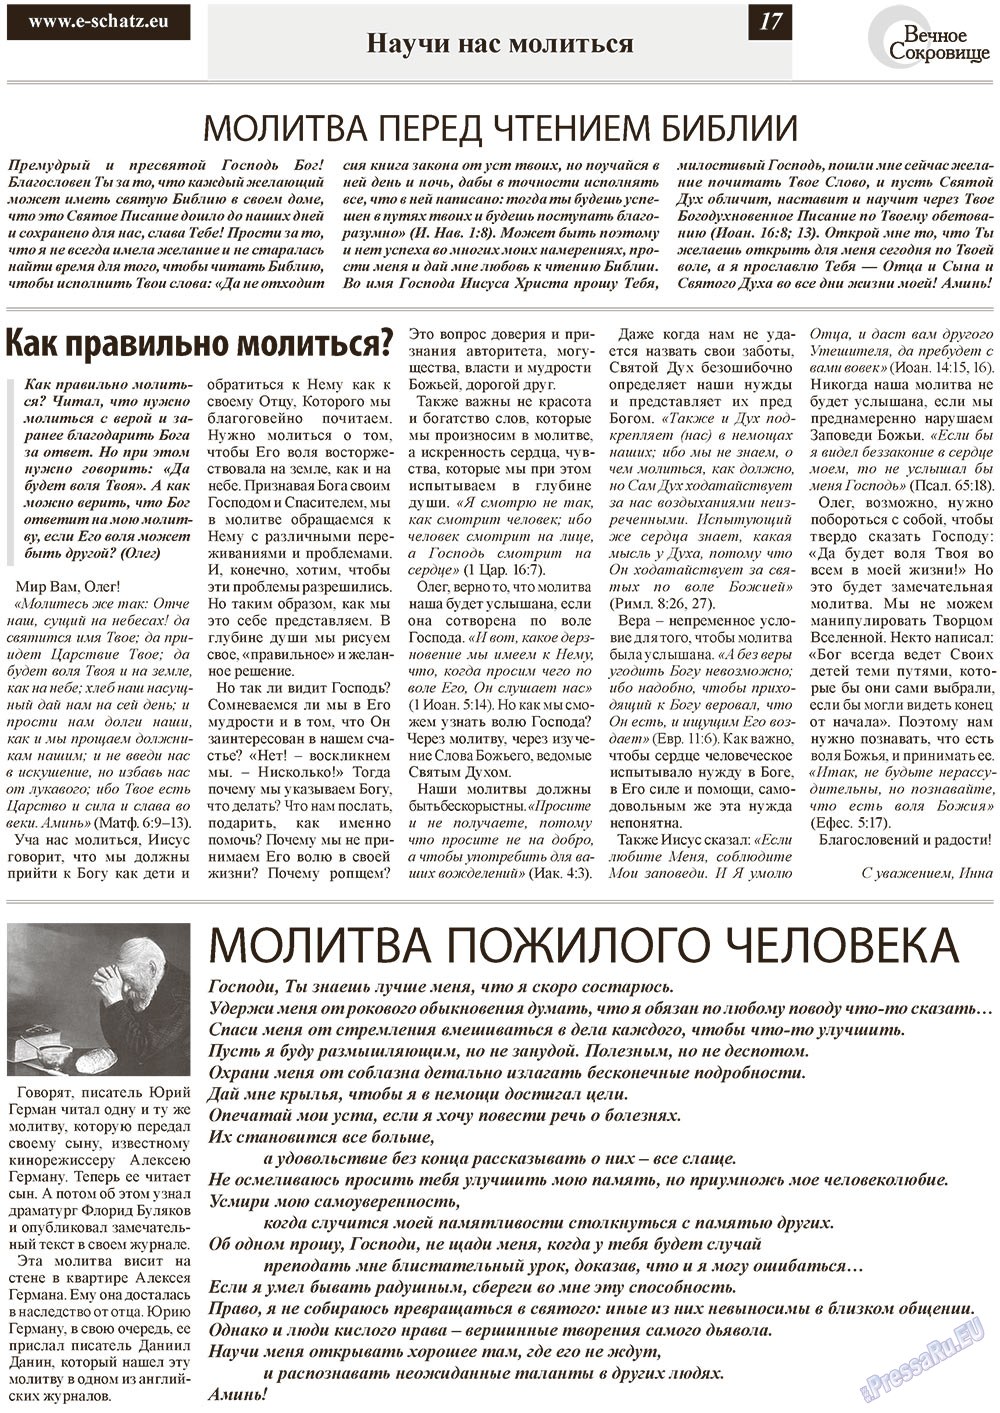 Вечное сокровище, газета. 2012 №6 стр.17